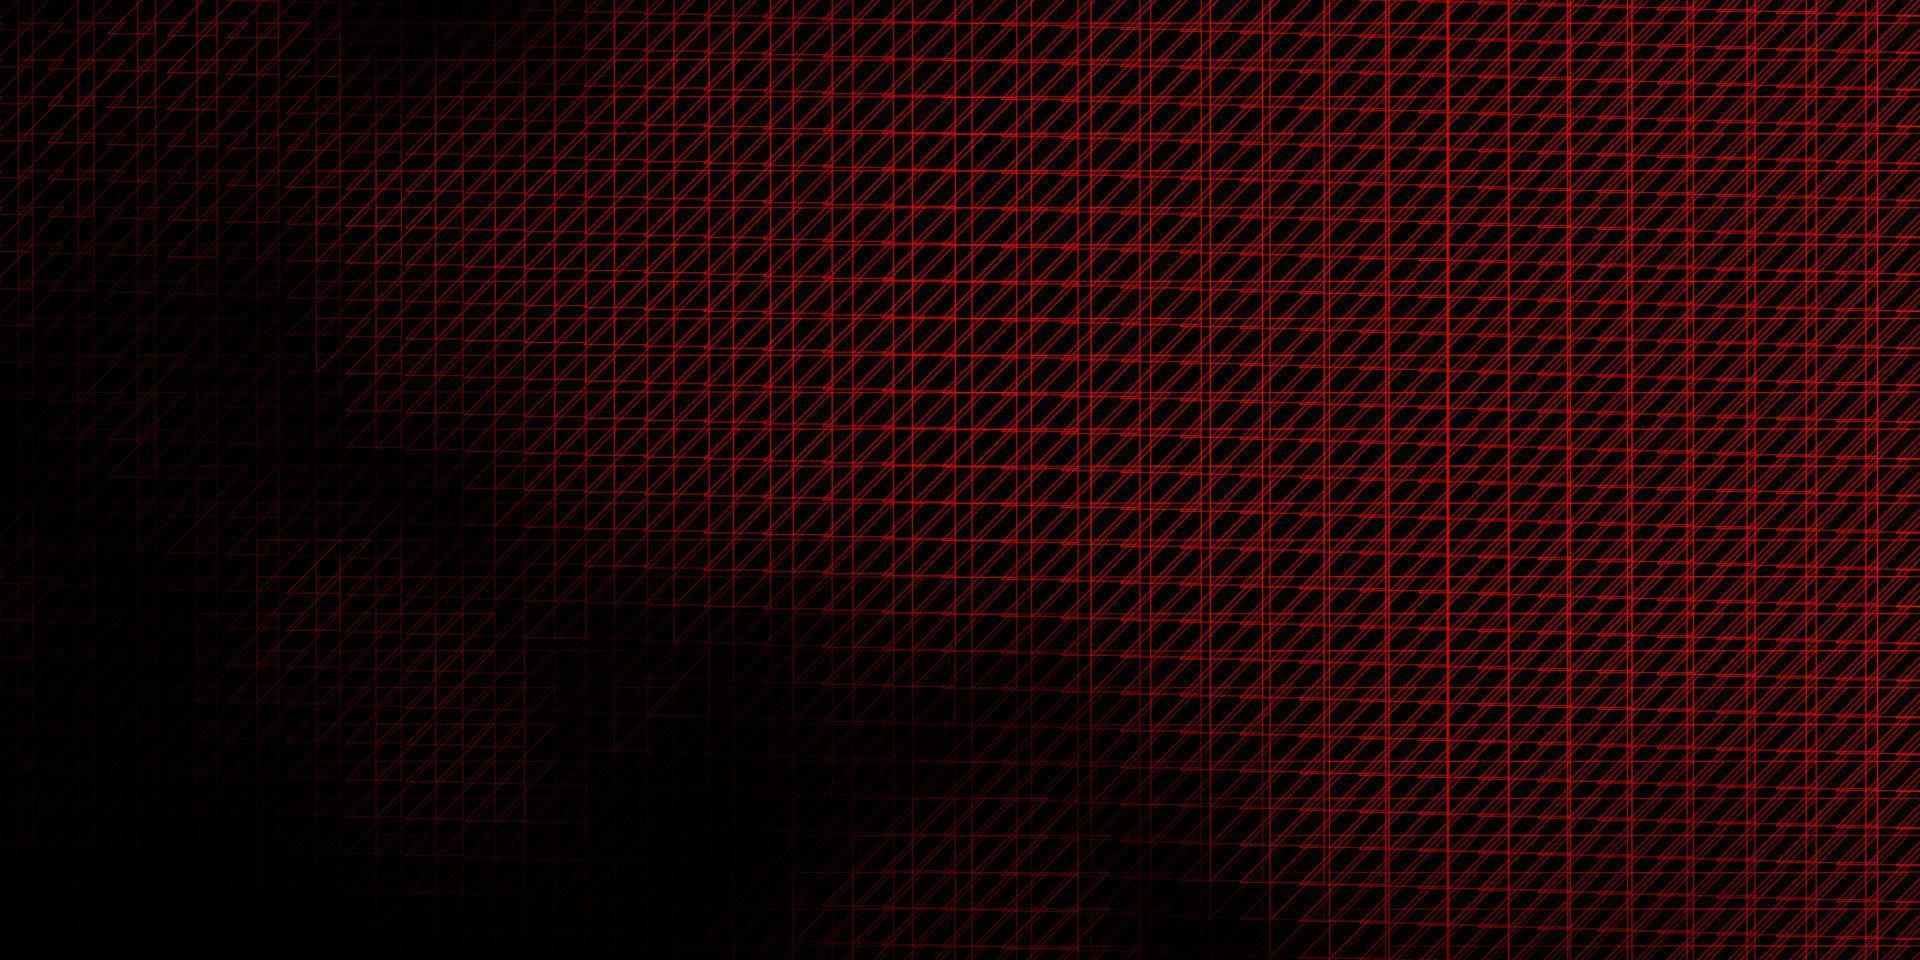 modello vettoriale rosso scuro con linee.